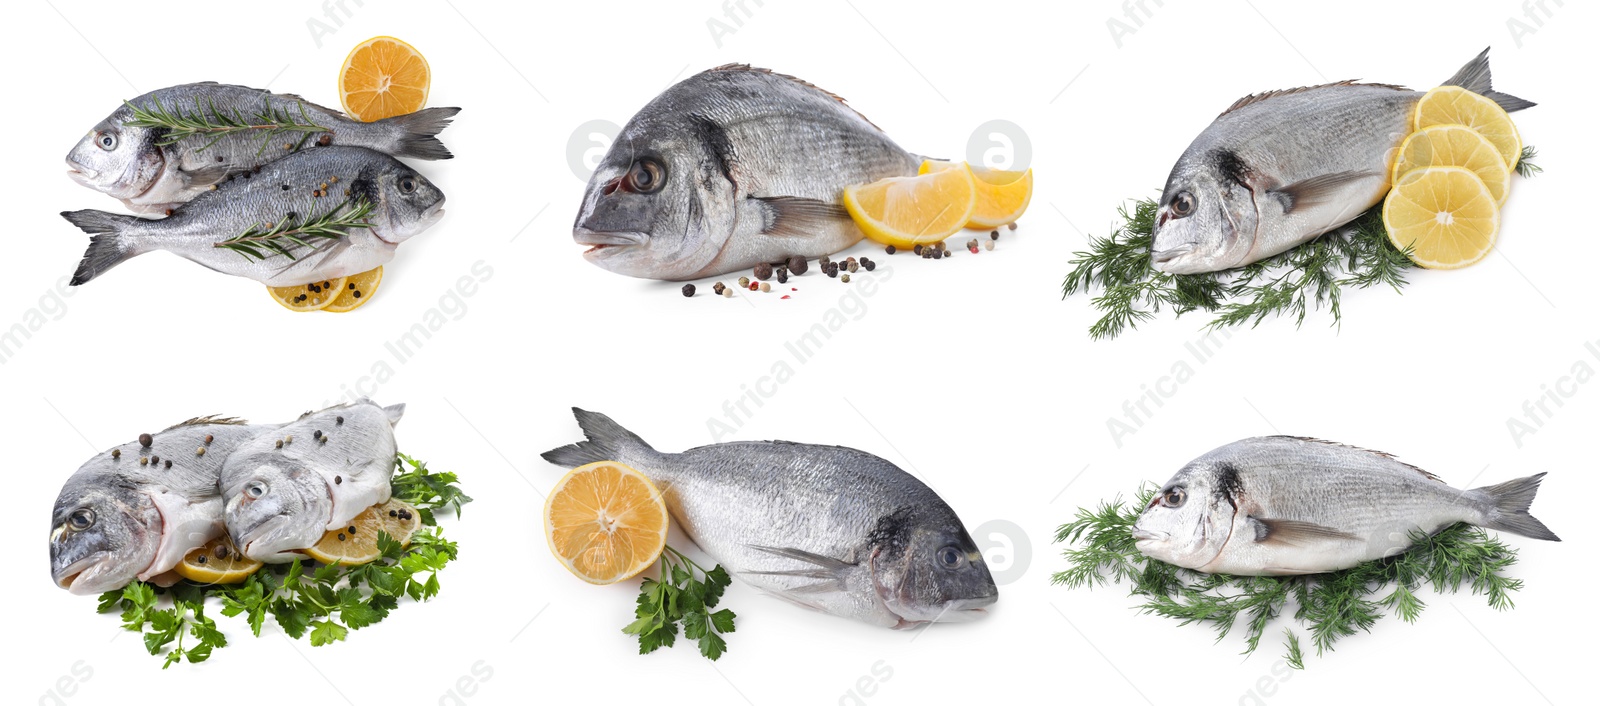 Image of Raw dorada fish, lemon and herbs isolated on white, set